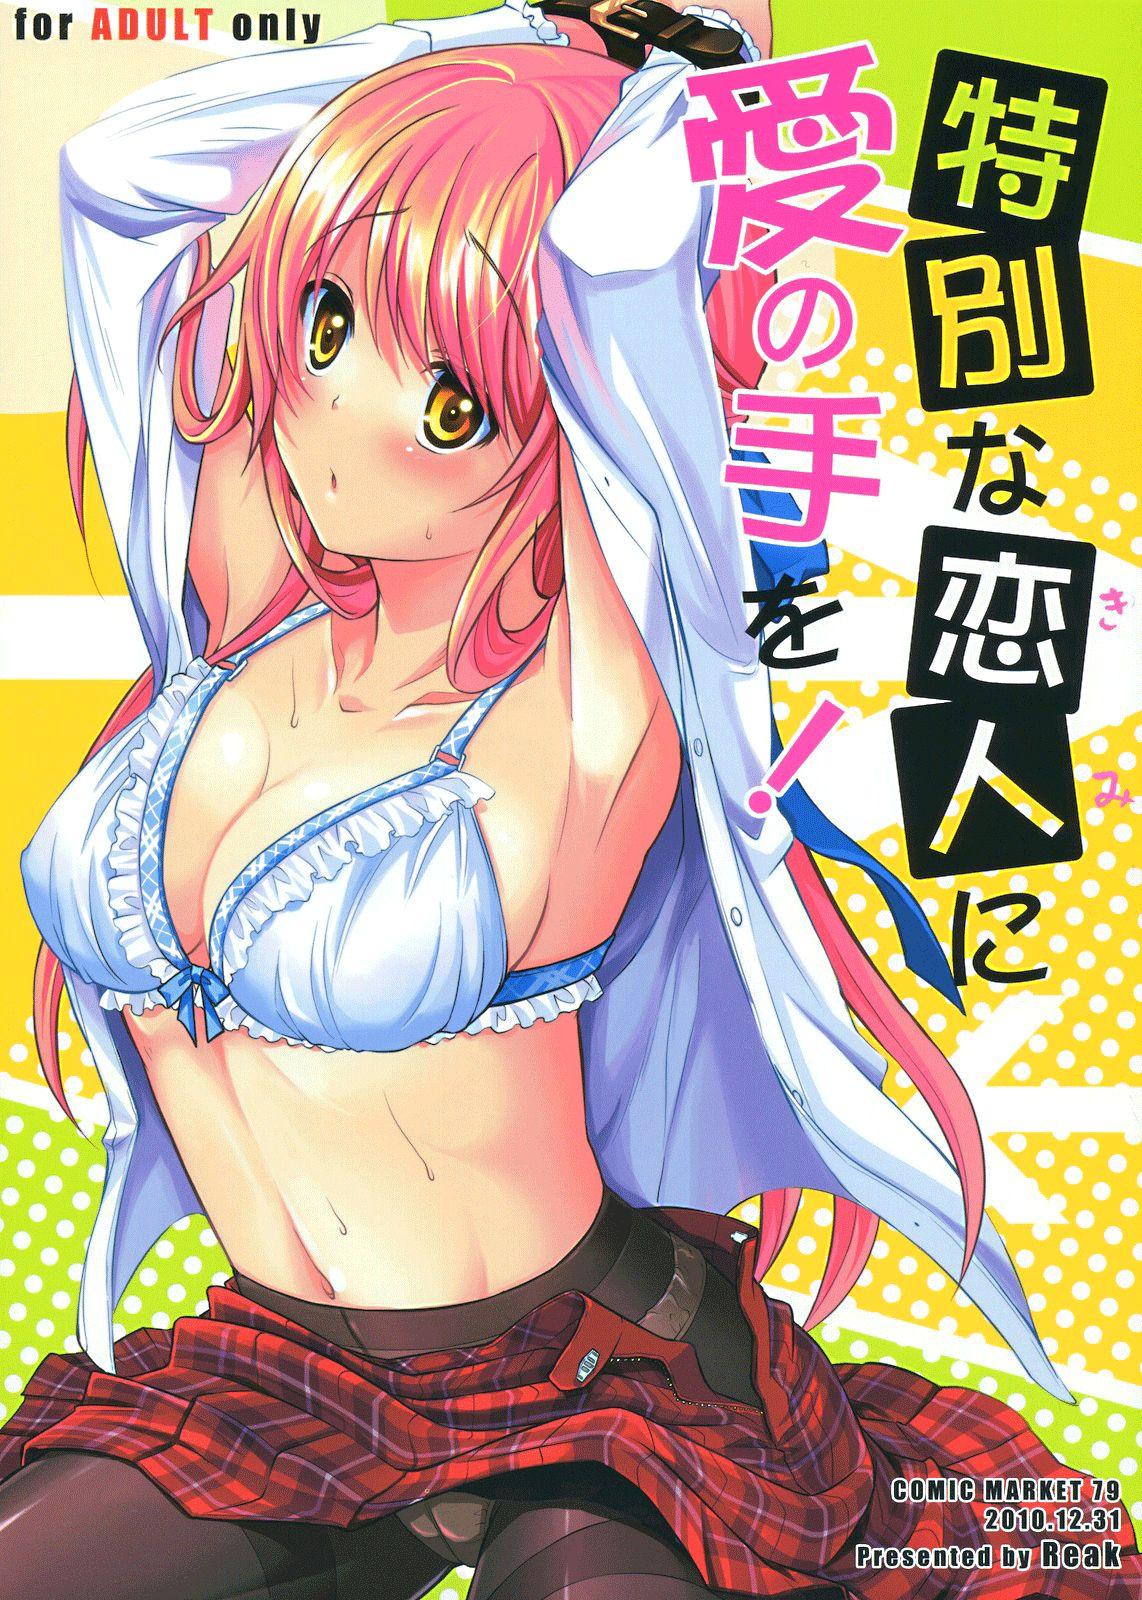 Tokubetsu Na Kimi Ni Ai No Te O 1 Manga Page 1 Read Manga Tokubetsu Na Kimi Ni Ai No Te O 1